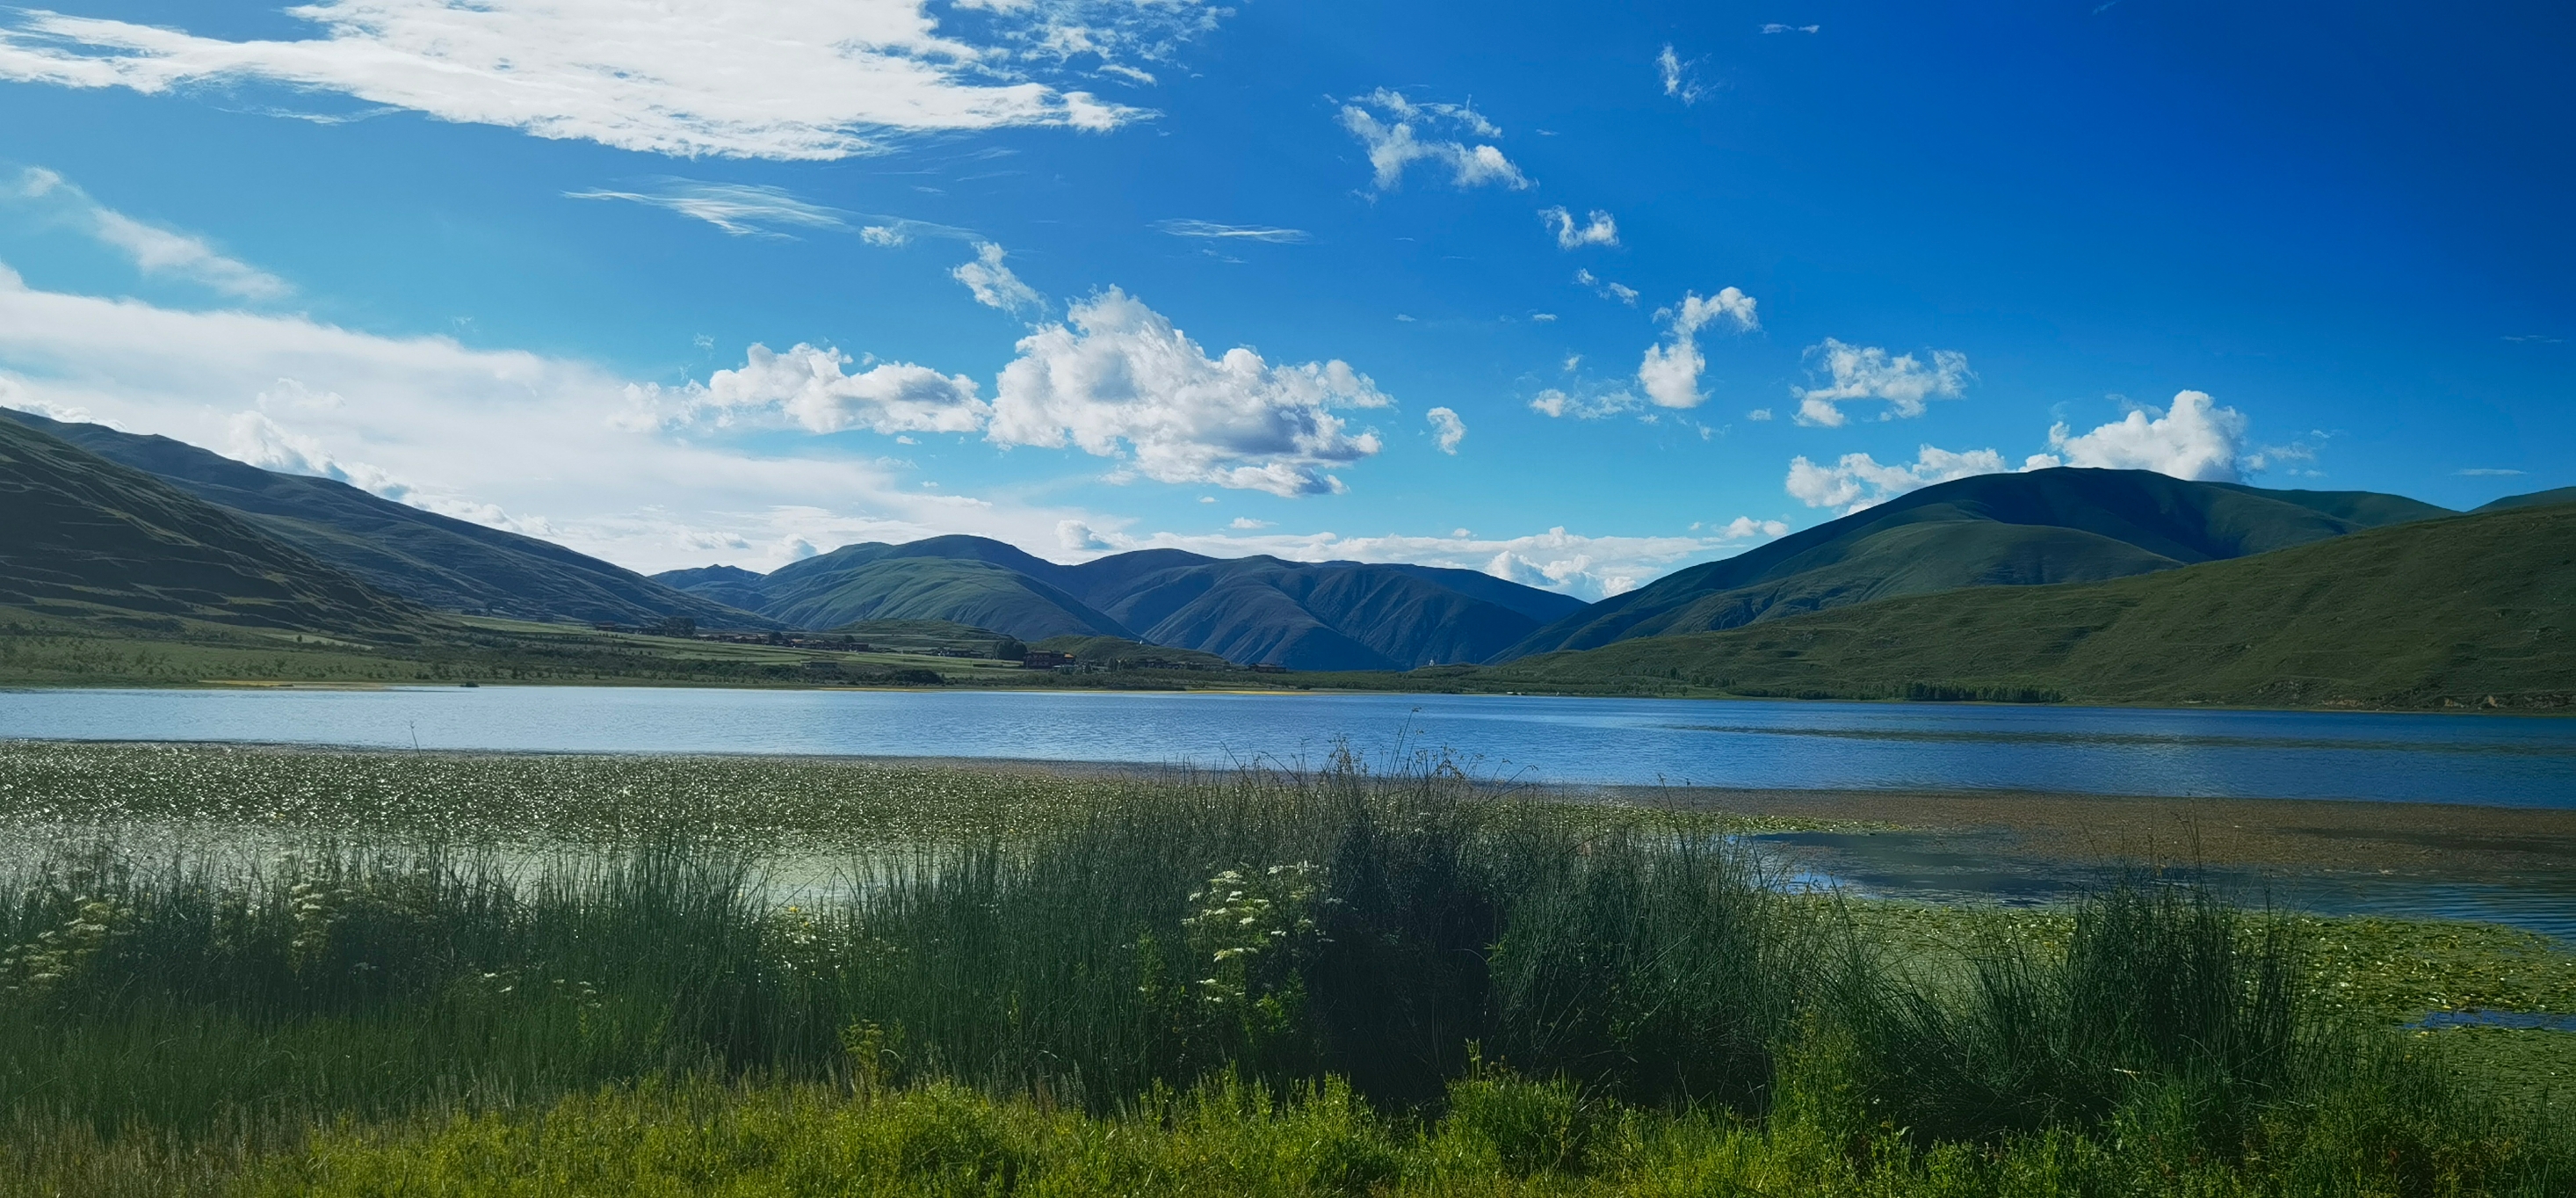 #寻找最美旅行地 卡萨湖位于炉霍县城向西大约30公里，是我省高原湖泊中唯一的一个水禽较集中的湿地，也